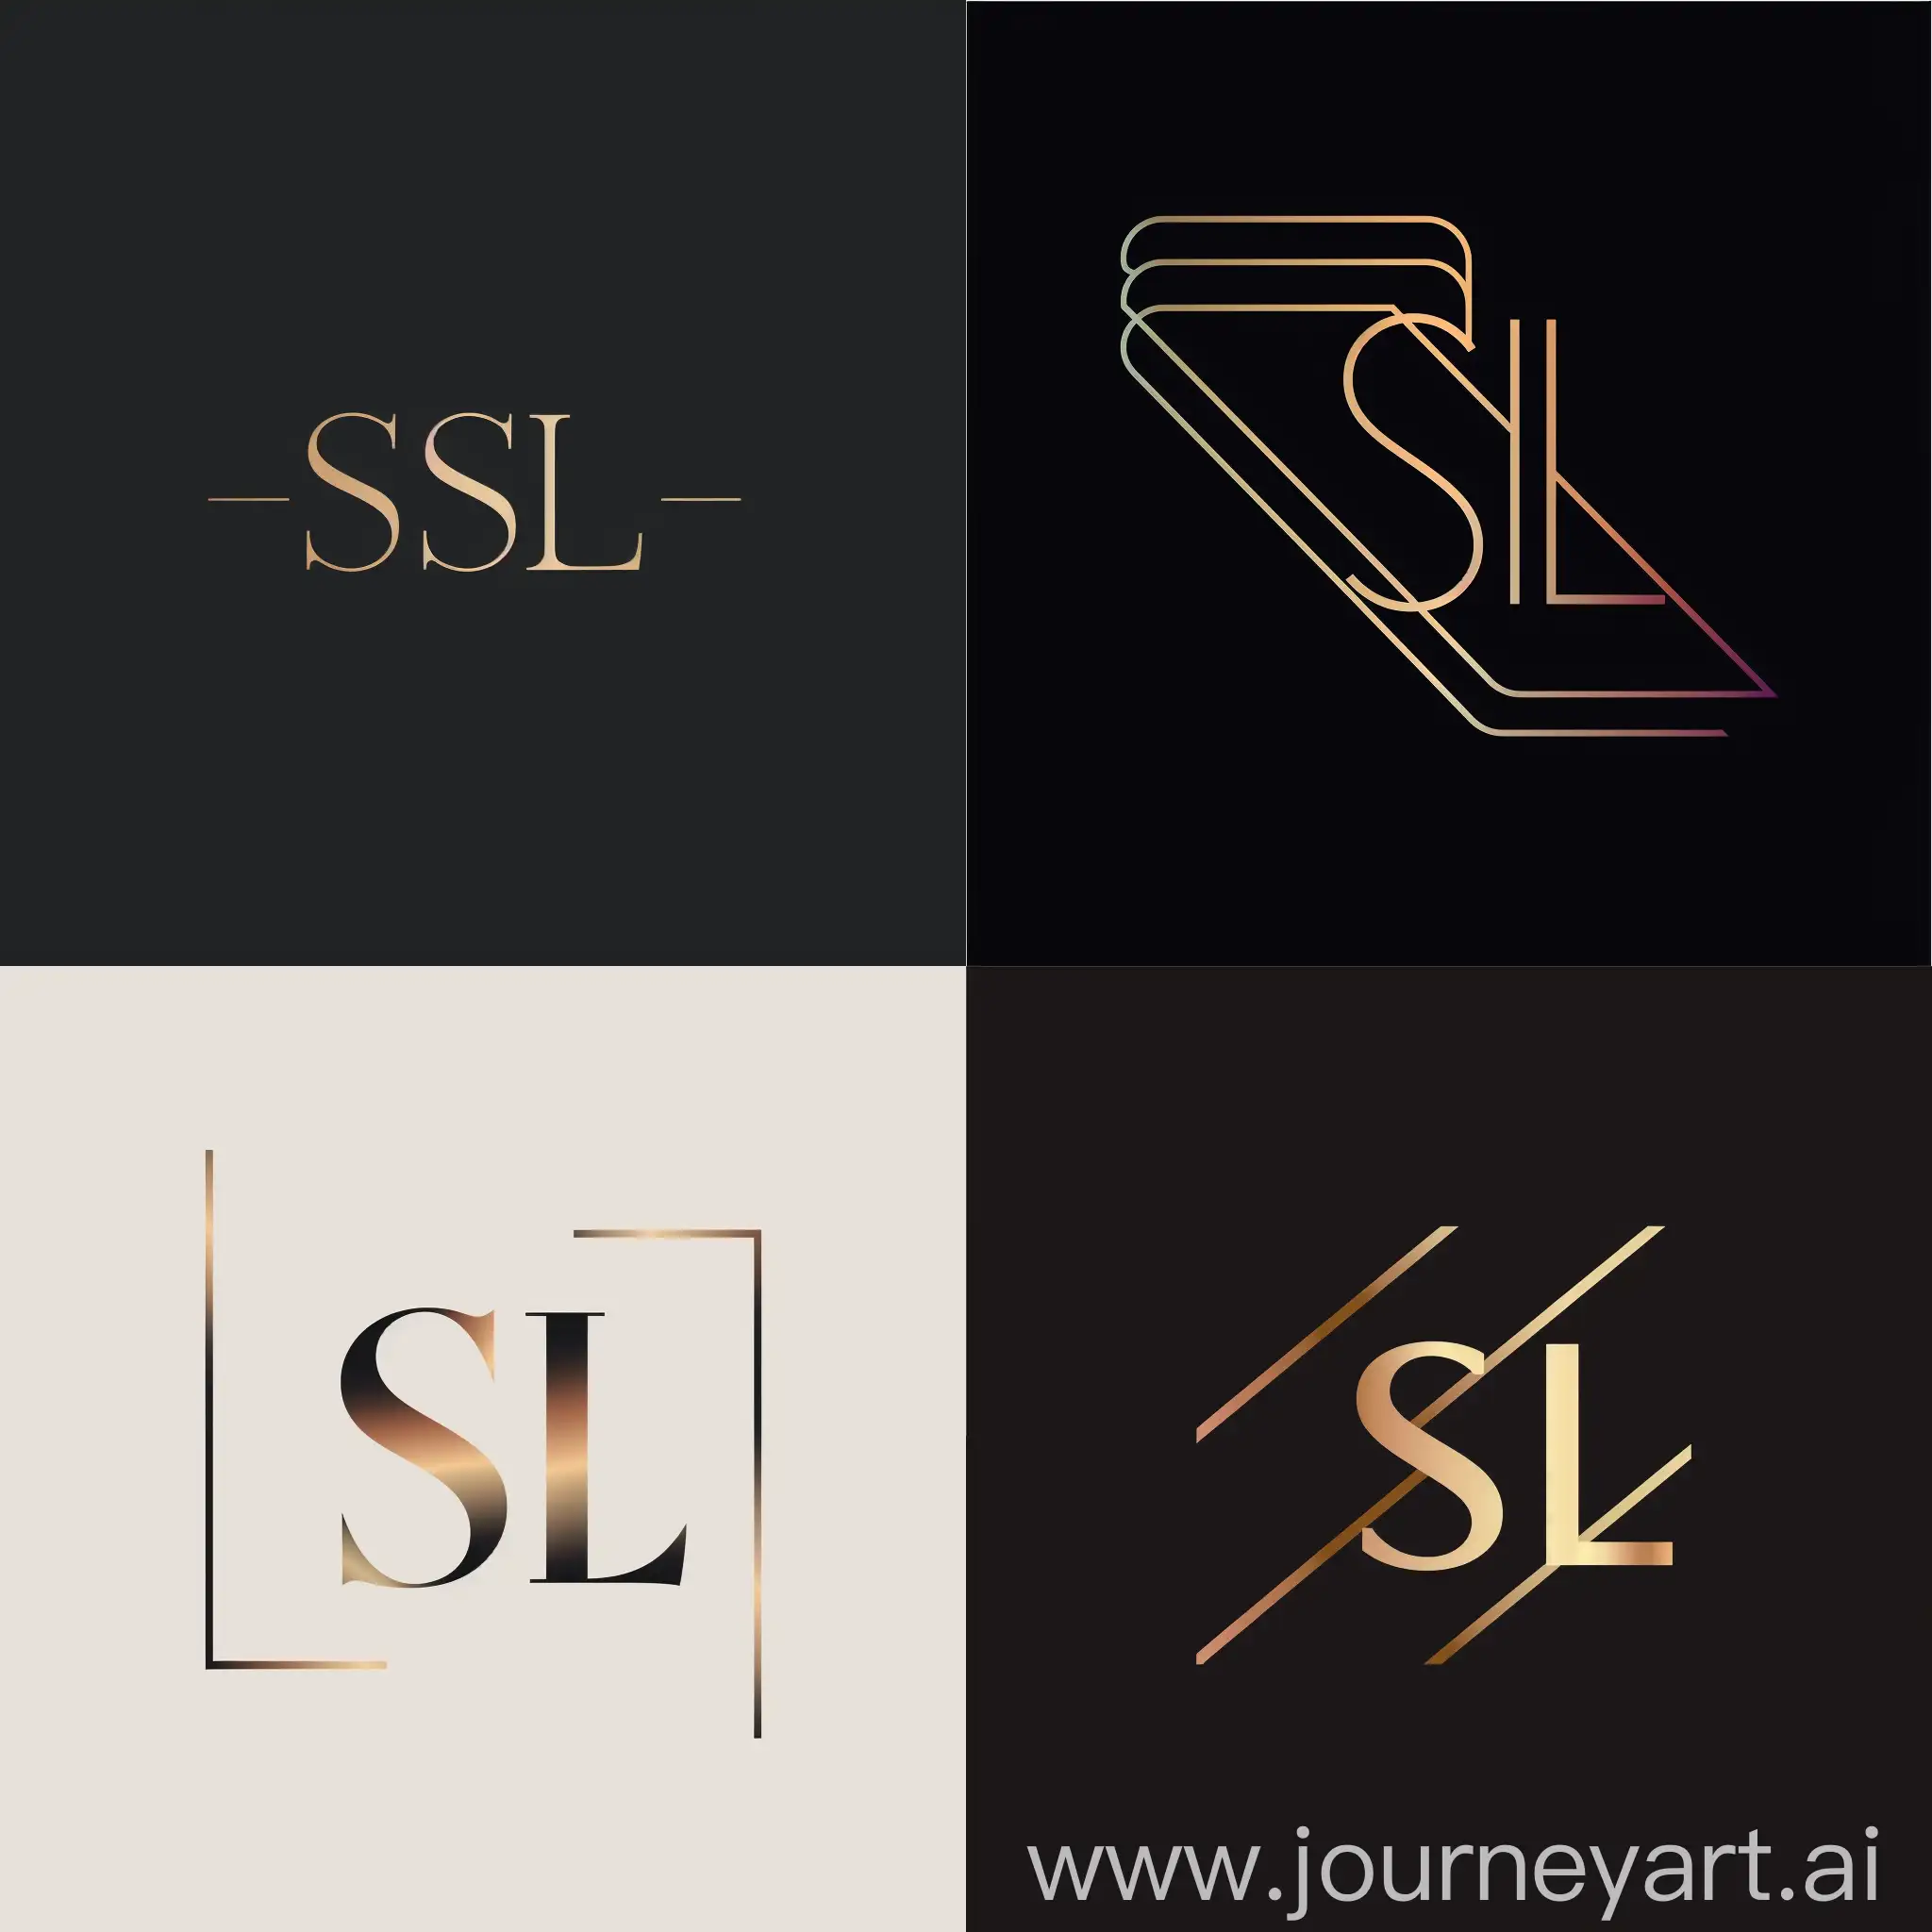 минималистичный и элегантный логотип с большими буквами "SL",  с утонченными линиями и цветовой гаммой, отражающий изысканность и стиль